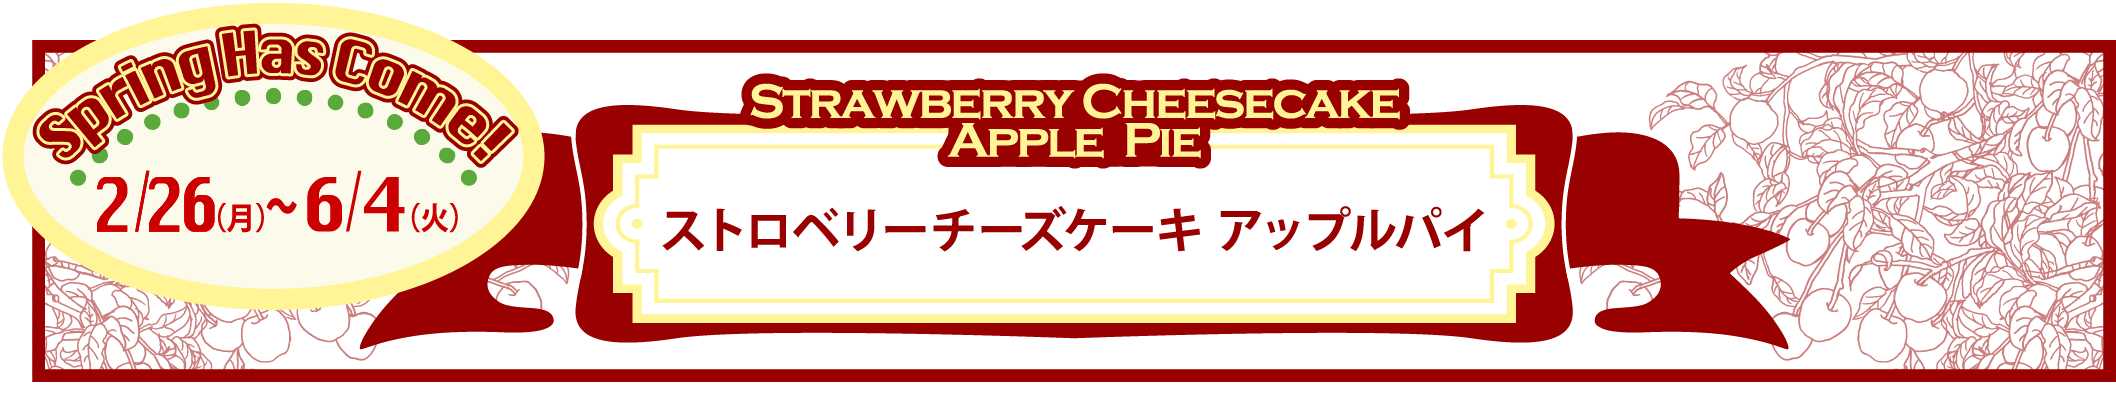 2/26(月)から『ストロベリーチーズケーキ アップルパイ』が販売スタート。